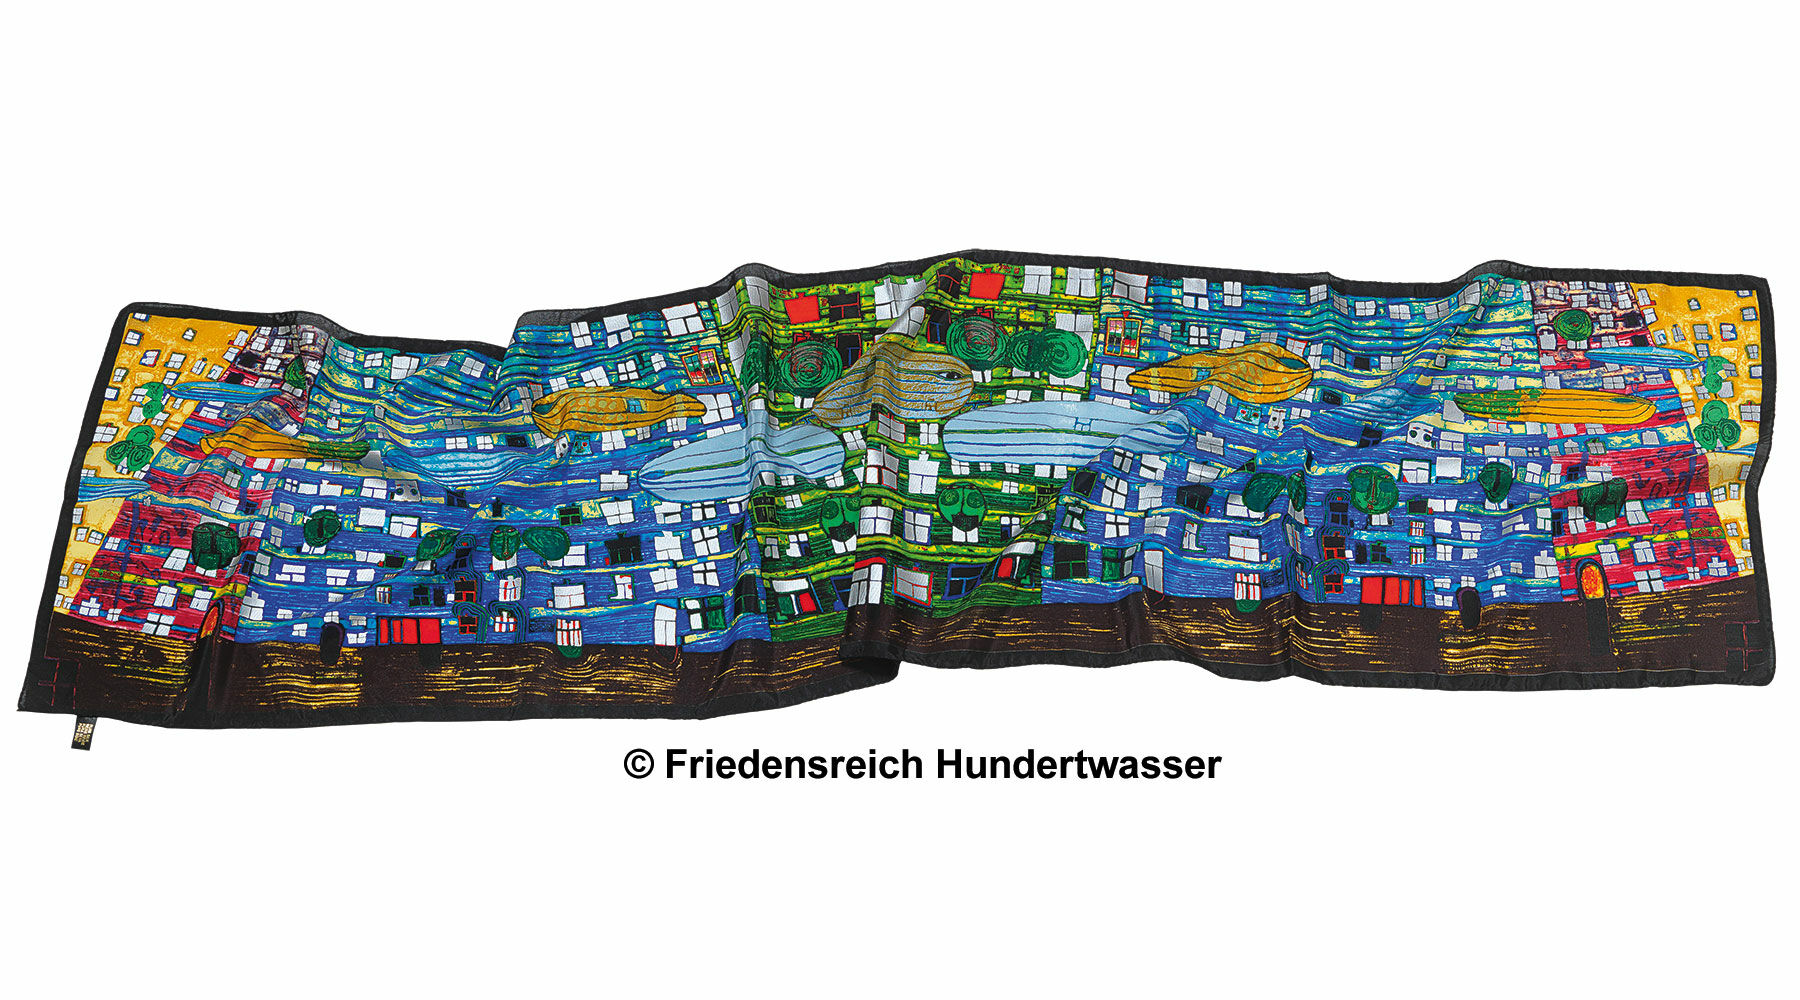 (777) Foulard "Song of the Whales" von Friedensreich Hundertwasser